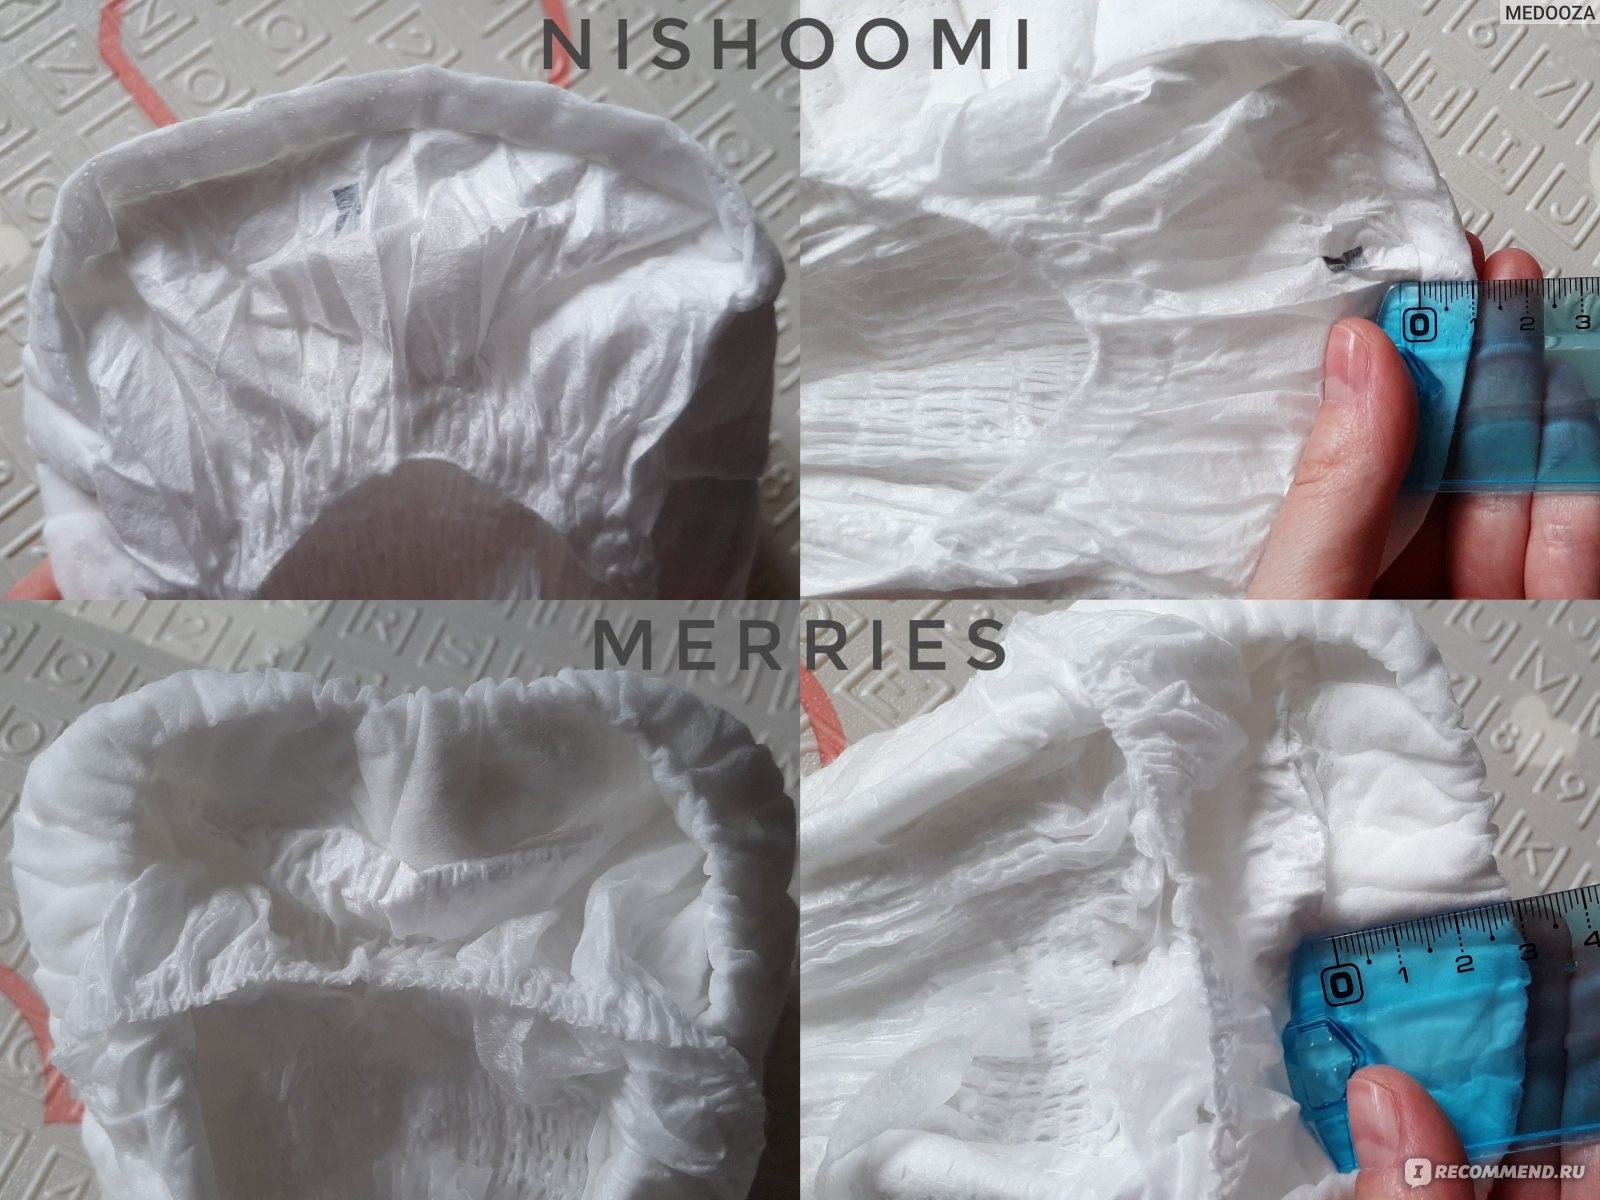 Сравнение подгузников Nishoomi и Merries. Ширина внутреннего впитывающего слоя, около резиночек вокруг ножек.